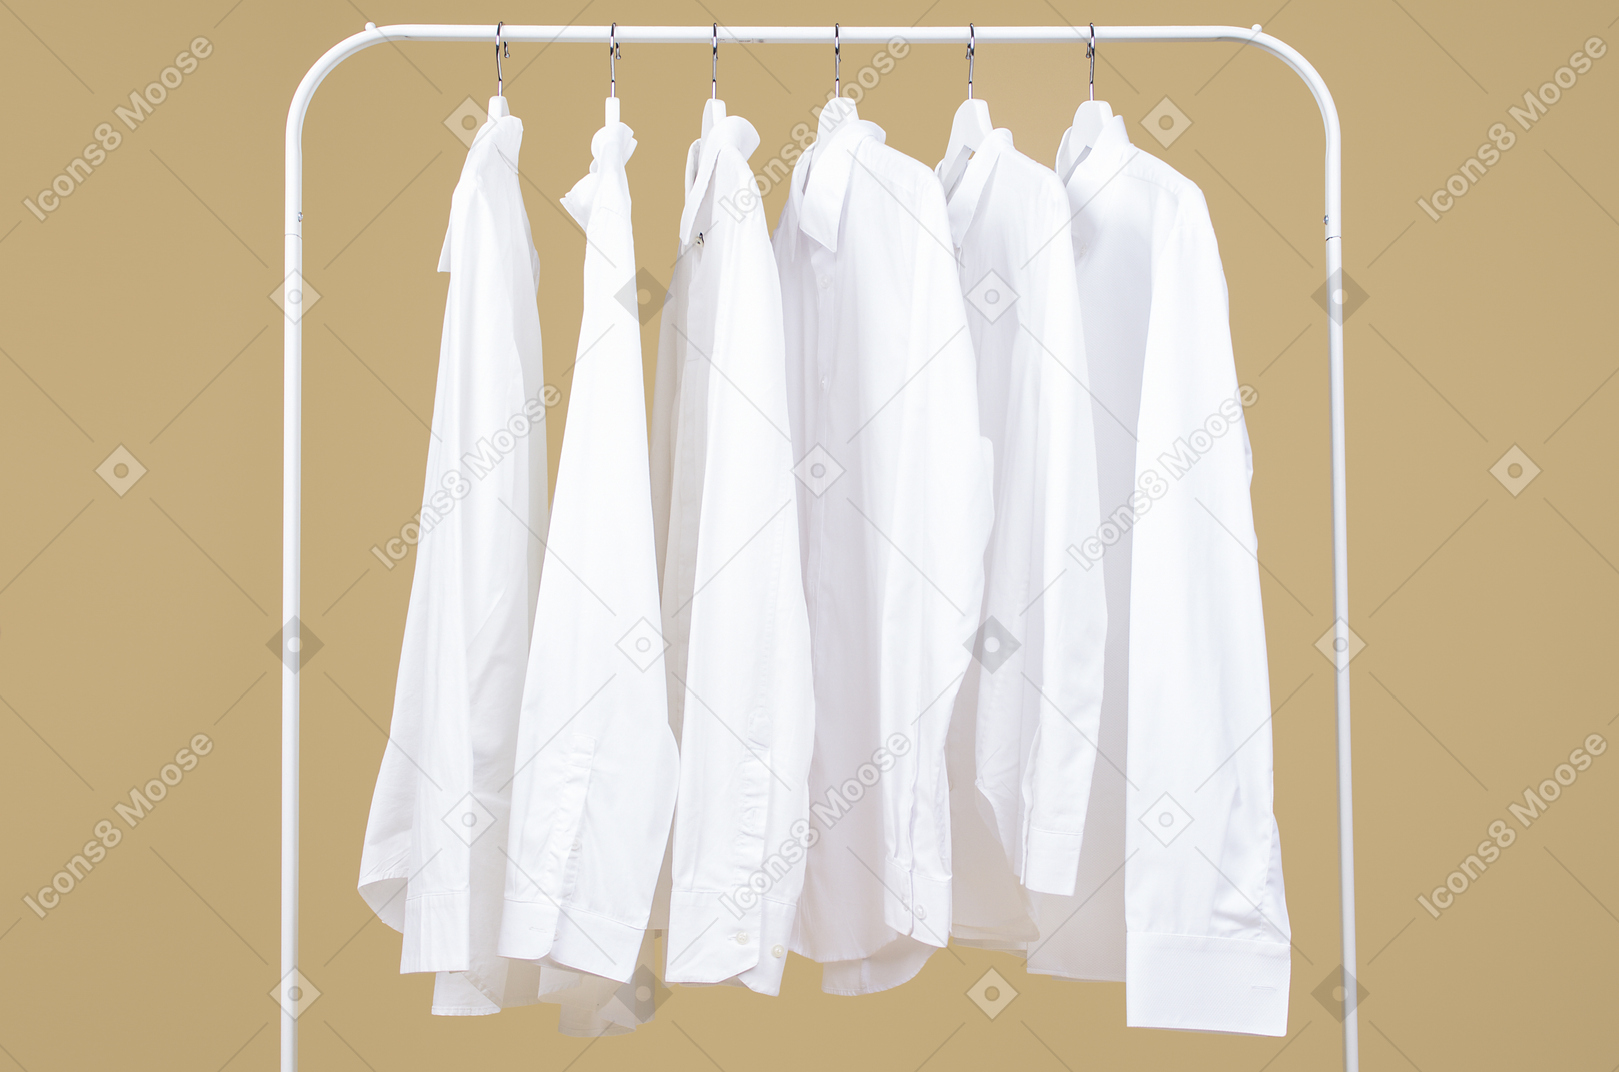 Camisas brancas nos cabides na classificação